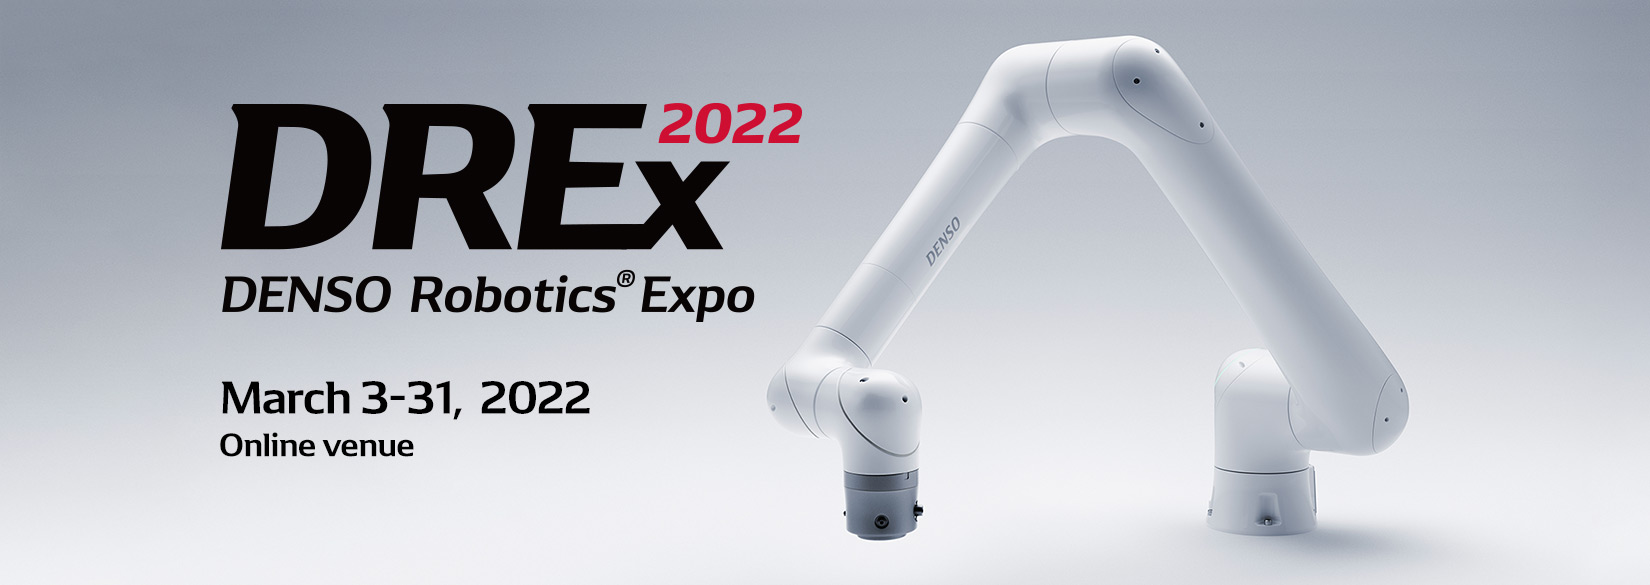 DENSO Robotics Expo 2022